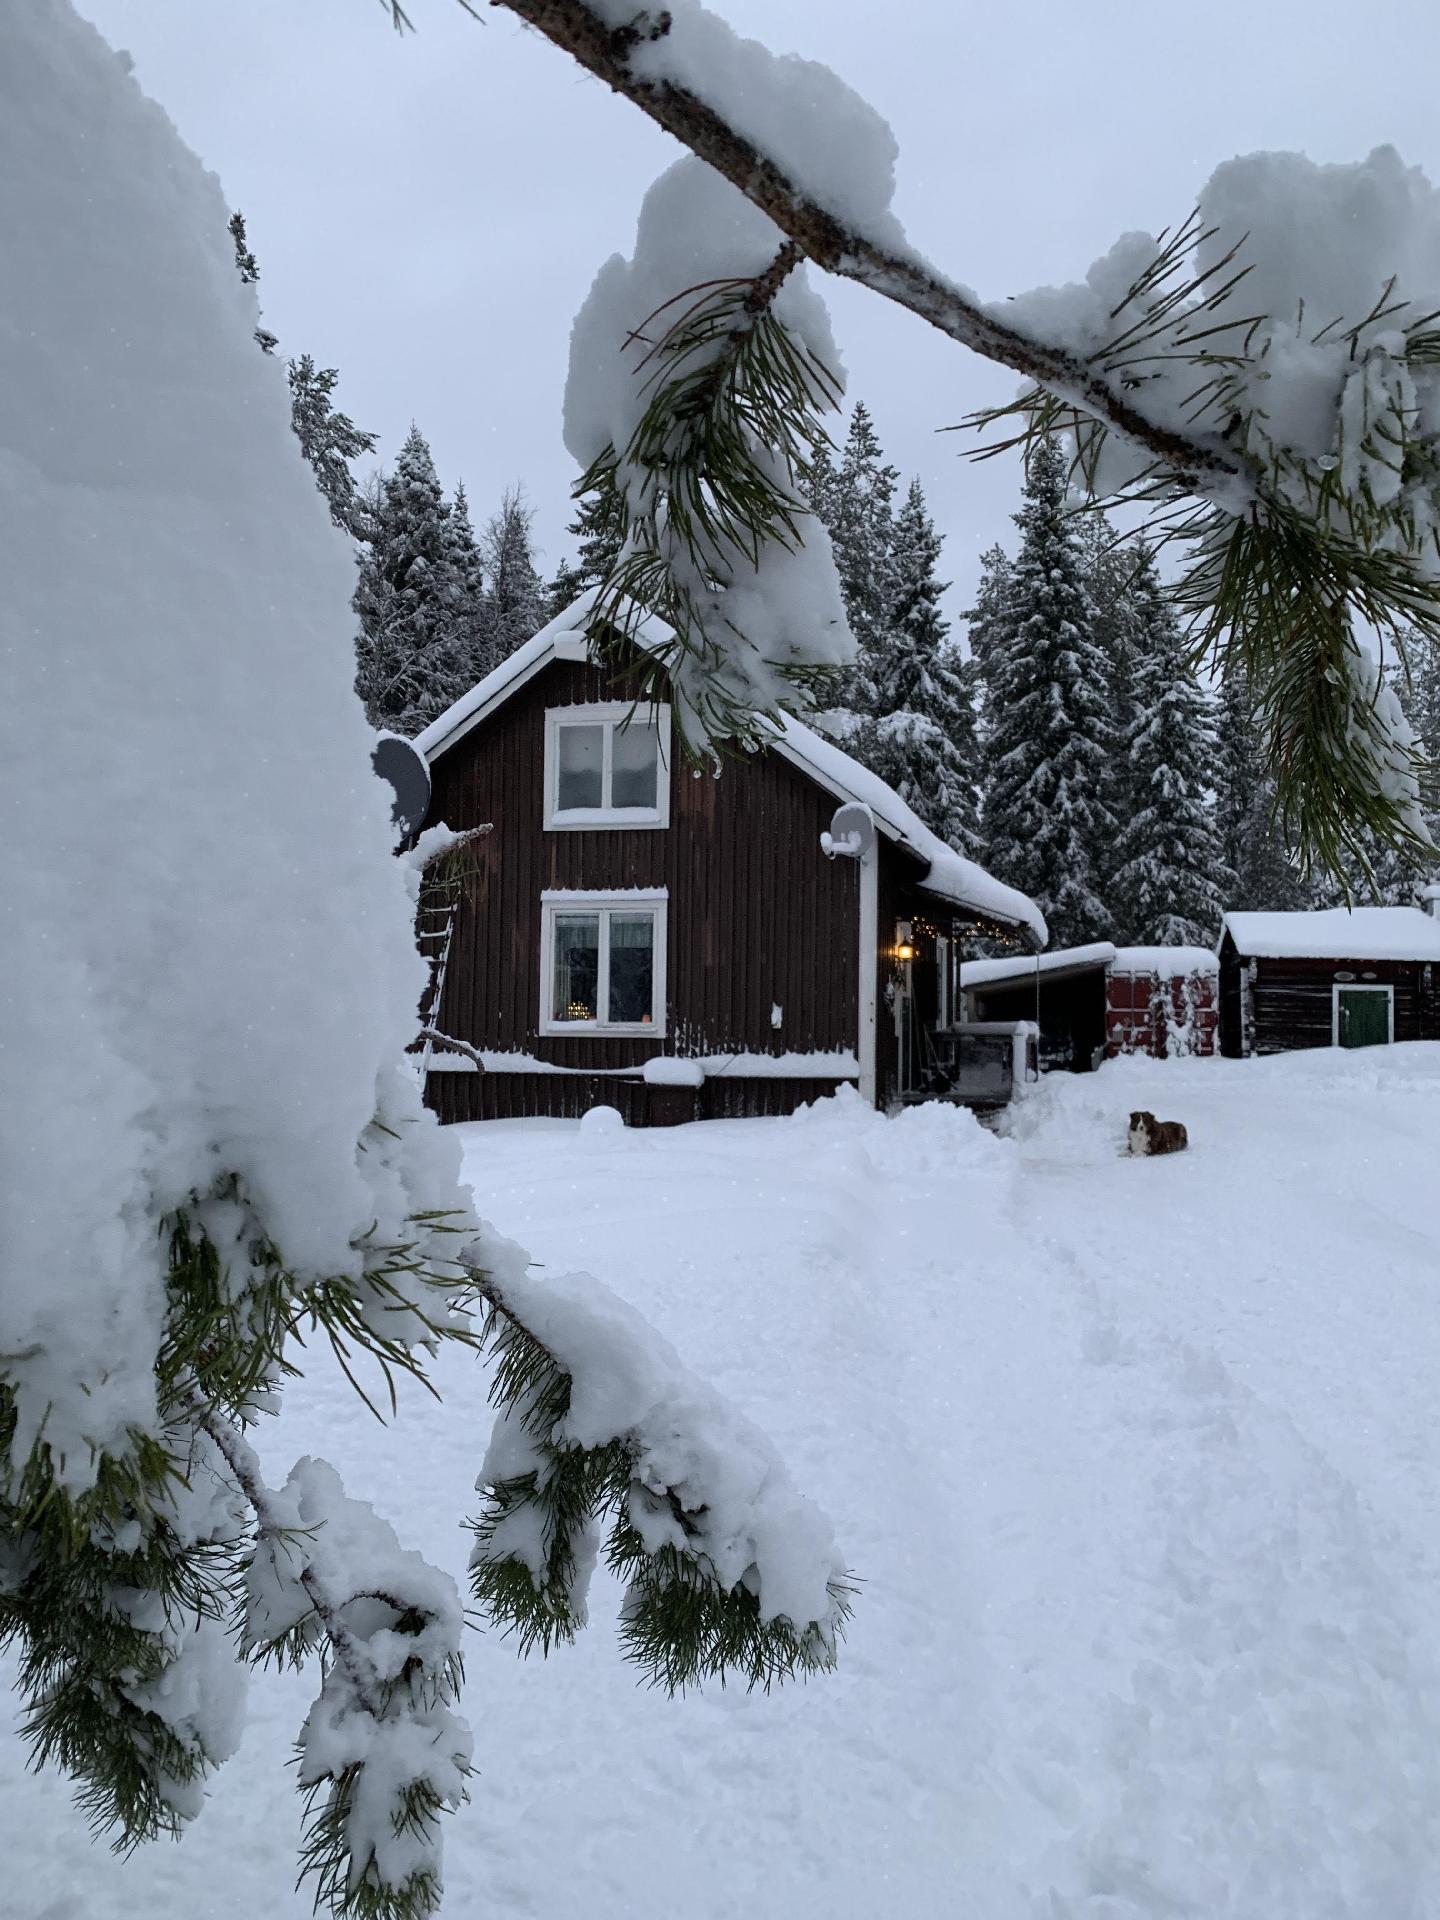 Gemütliches Ferienhaus am Polarkreis Ferienhaus in Schweden